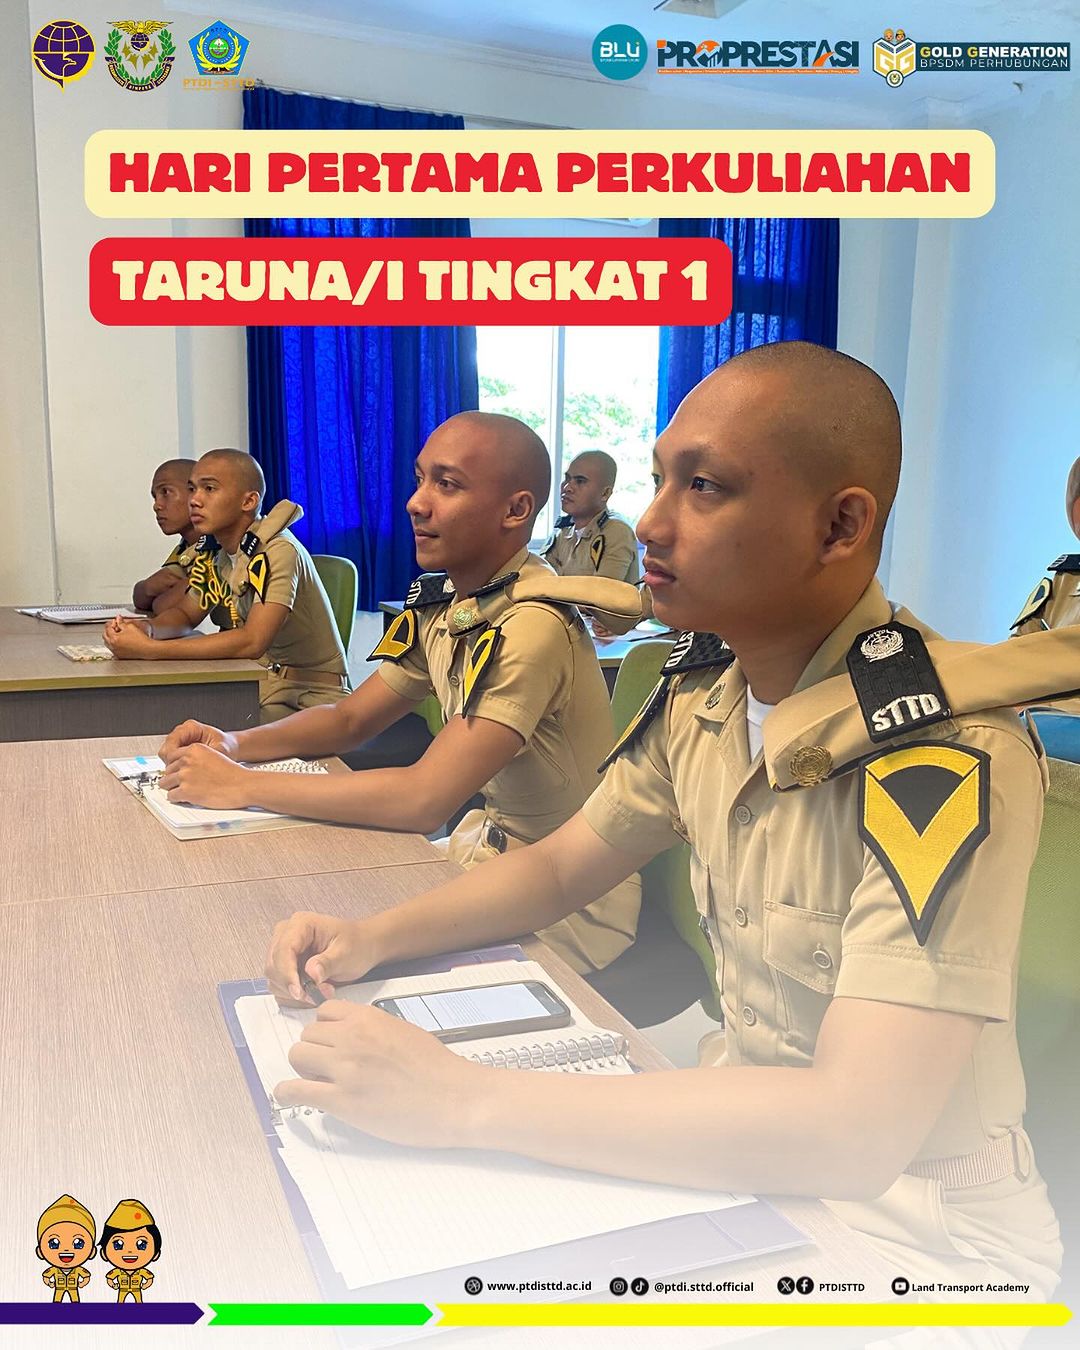  hari pertama perkuliahan bagi Taruna/i Politeknik Transportasi Darat Indonesia – STTD Tingkat 1